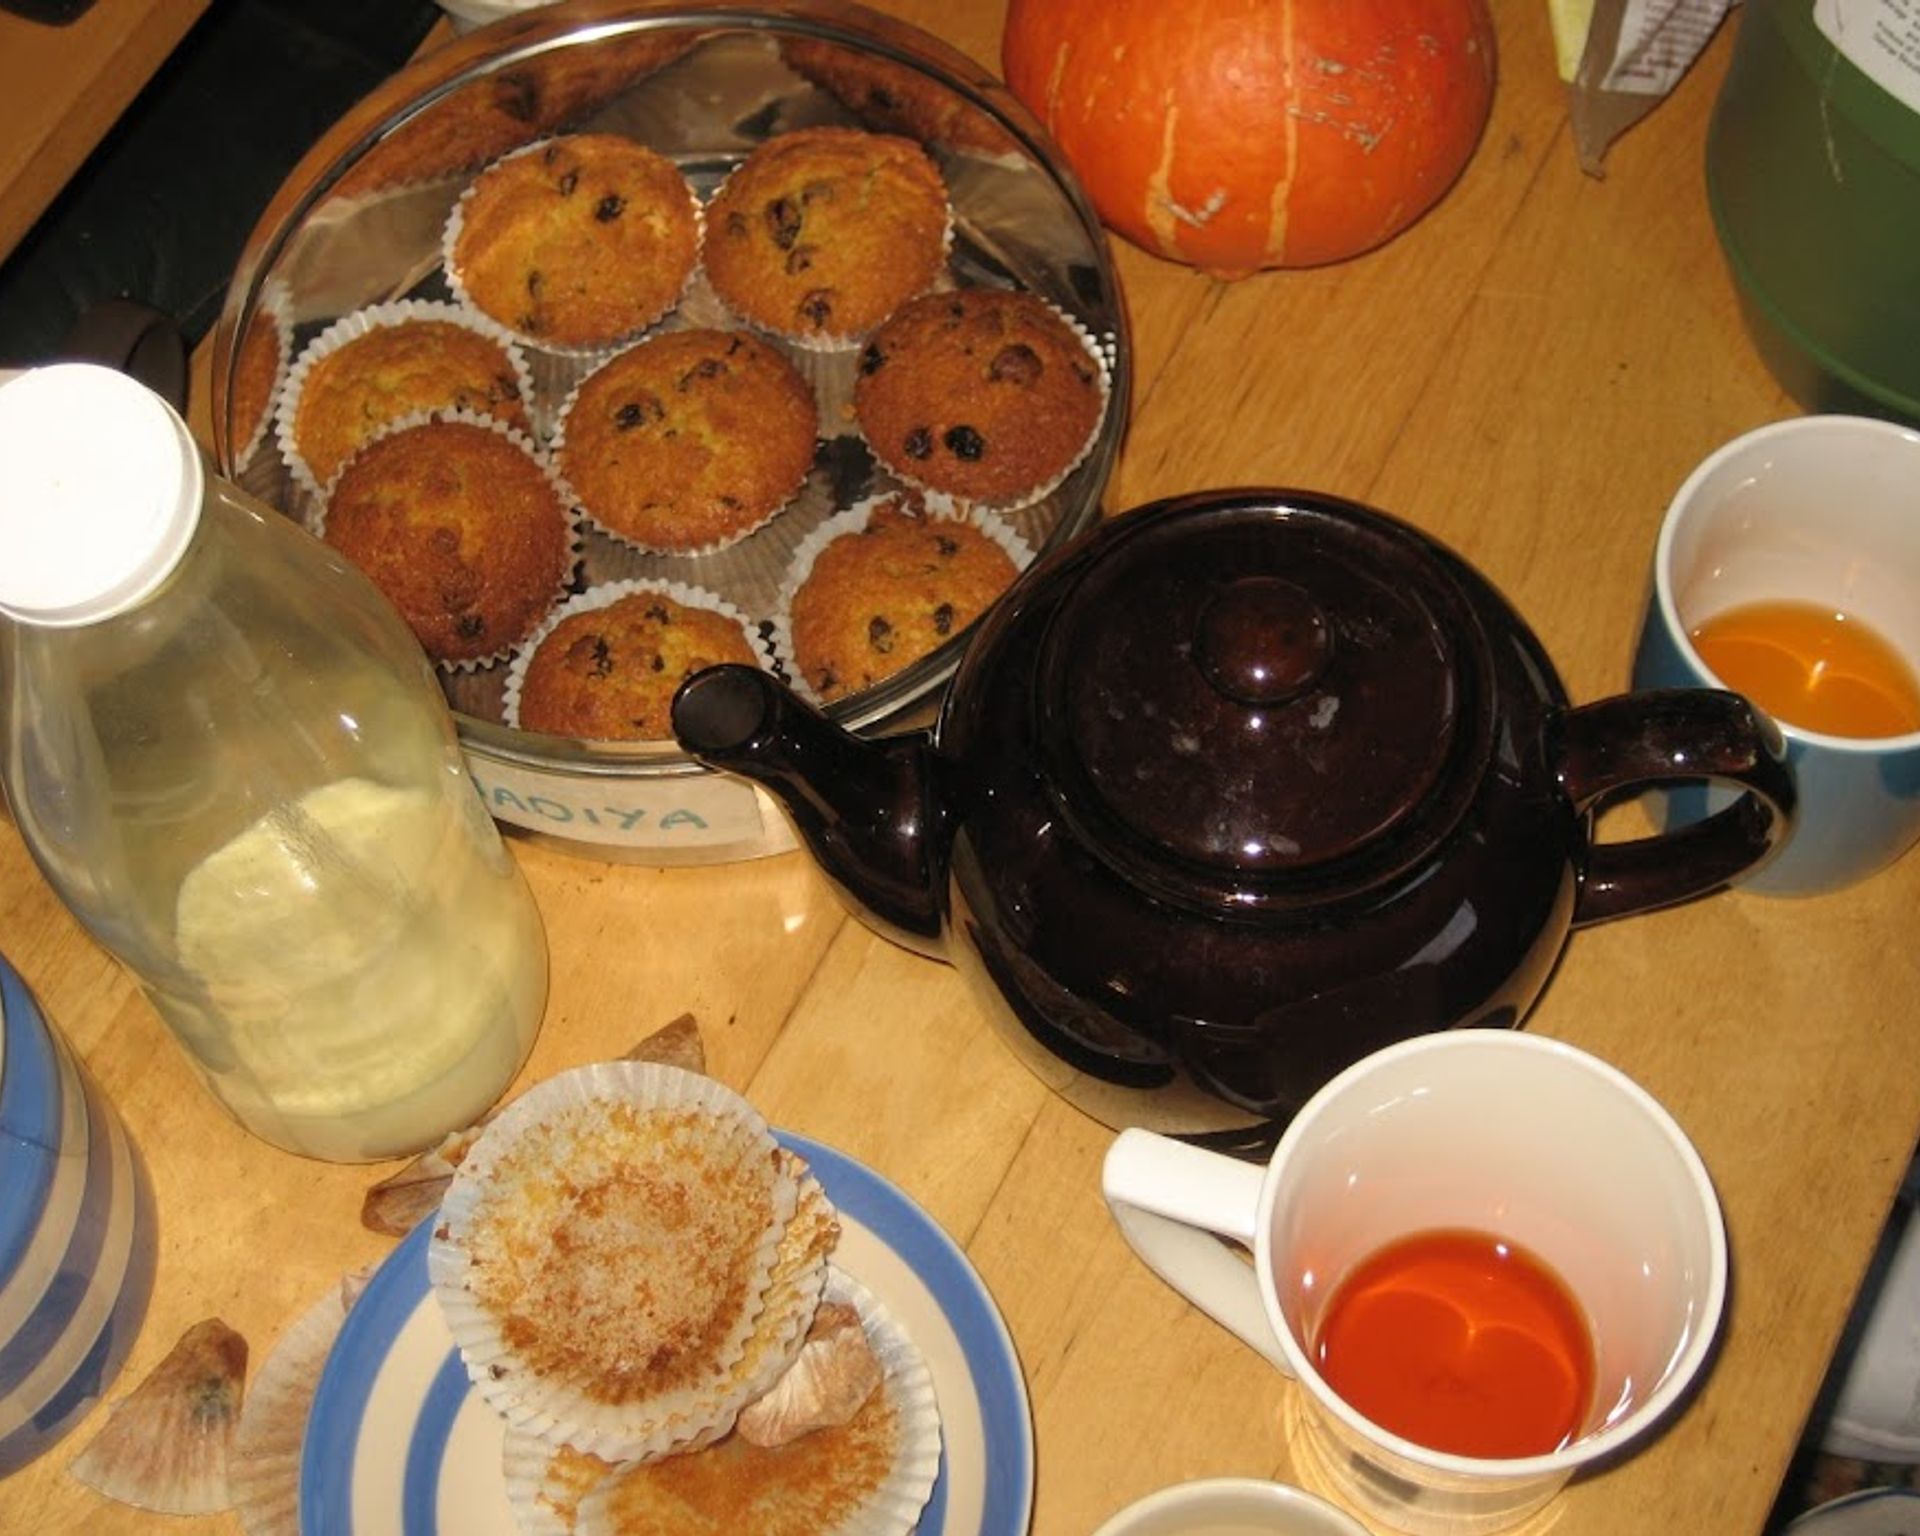 Muffiny v plechovej miske pri čajníku. Na stole sú aj čajové poháre, fľaša s mliekom a cukornička.